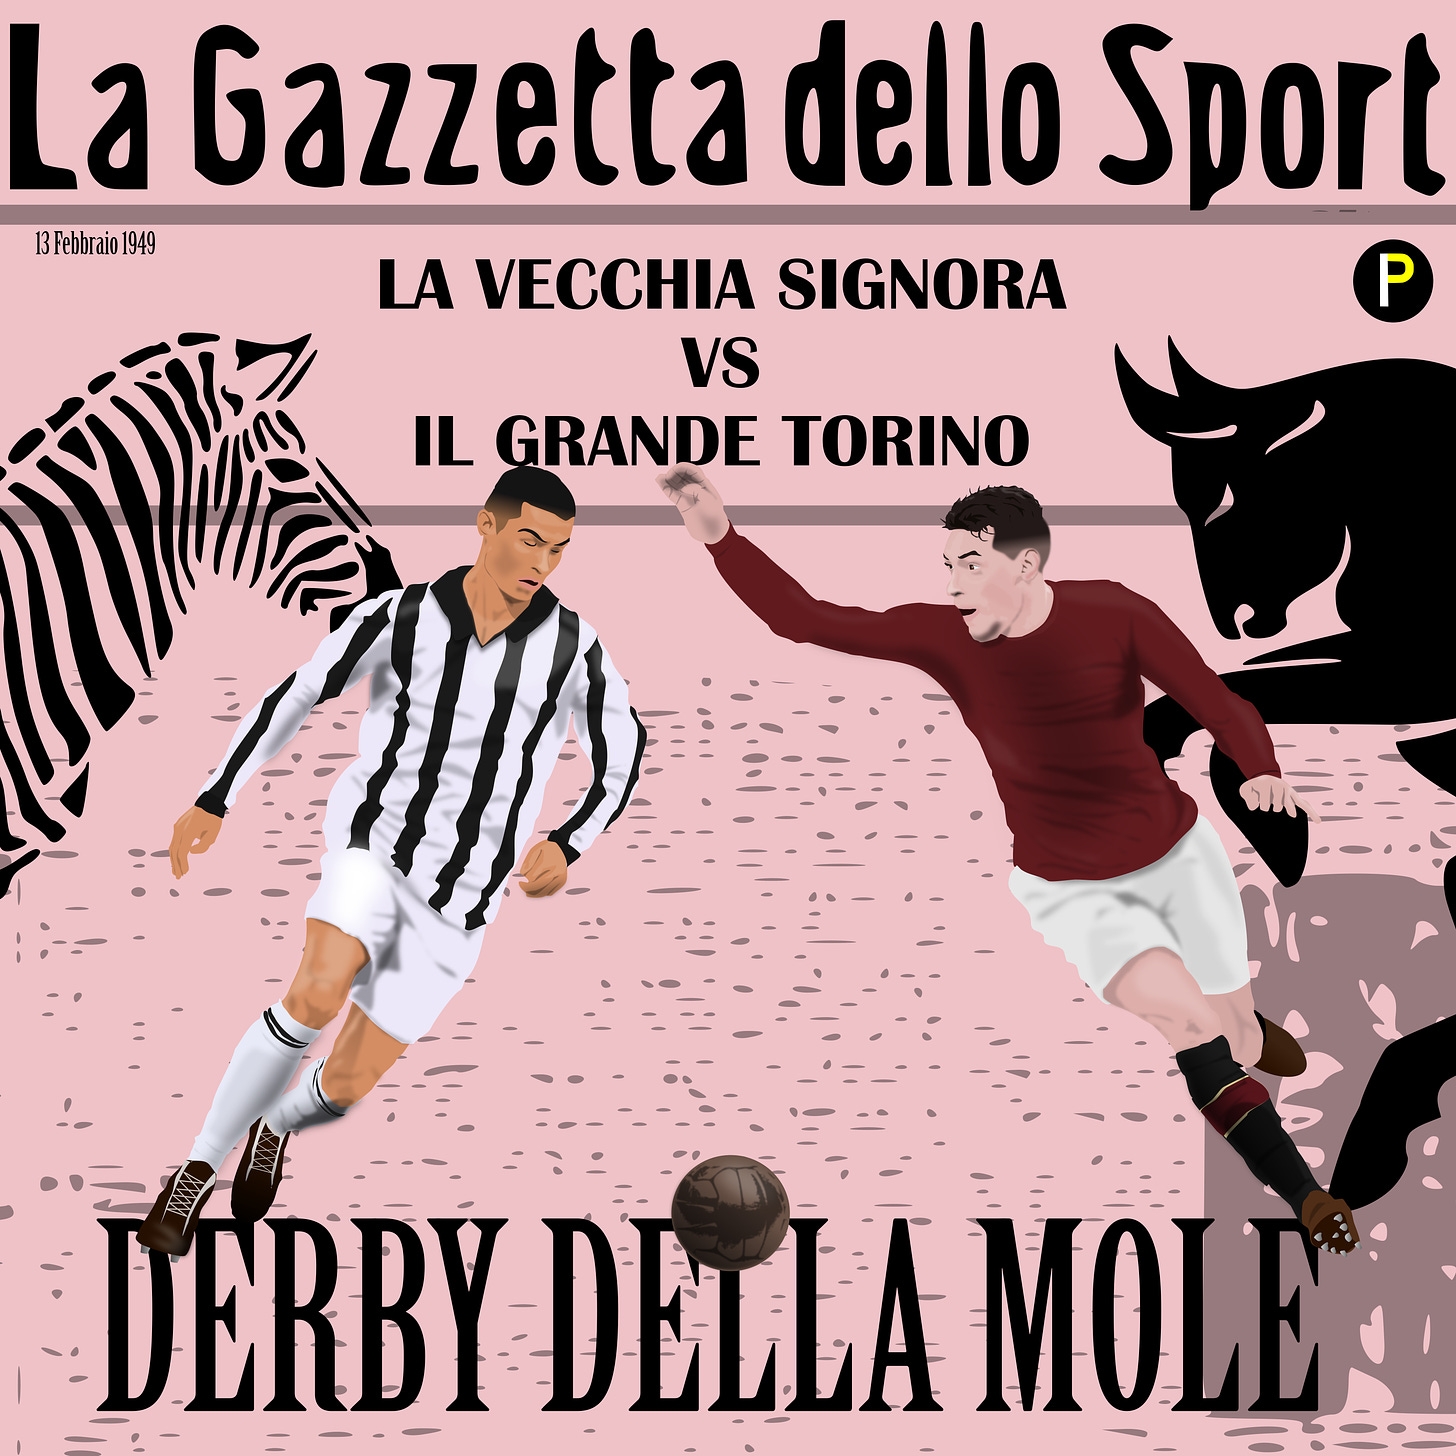 Juventus Torino The Derby della Mole Turin